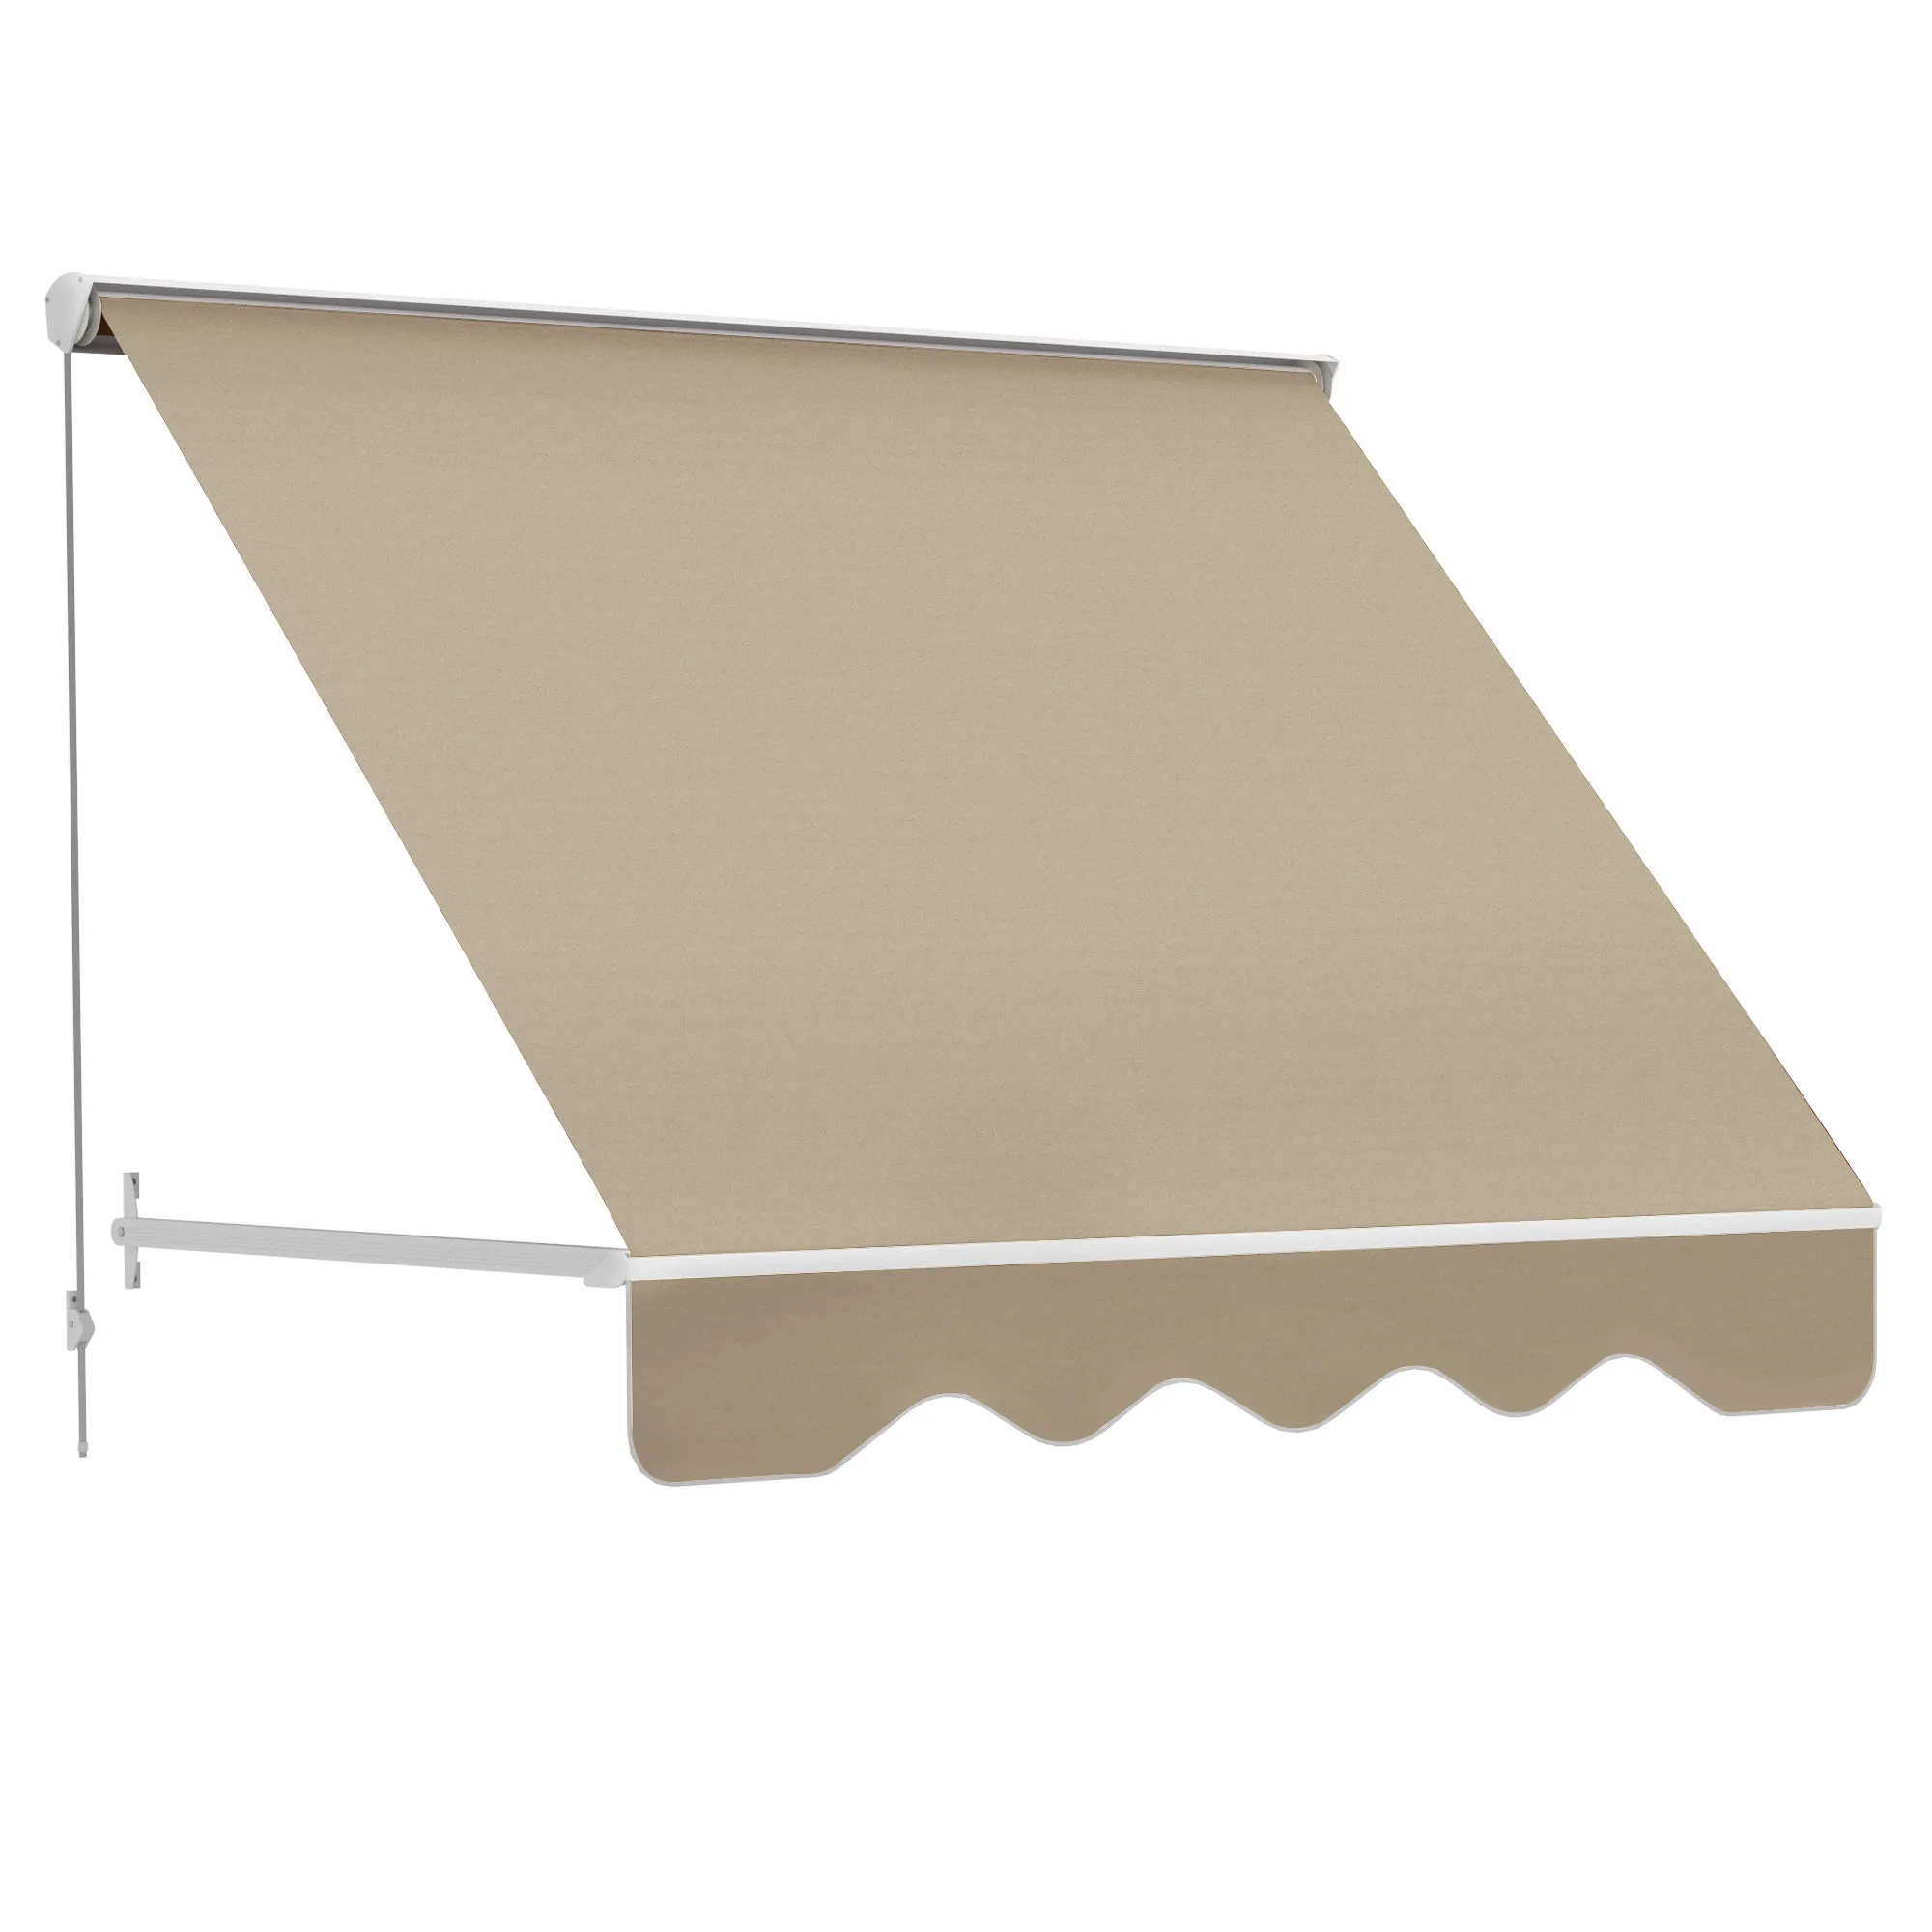  Tenda da Sole a Caduta con Rullo Avvolgibile e Angolazione Regolabile 0-120°, 180×70cm, Beige